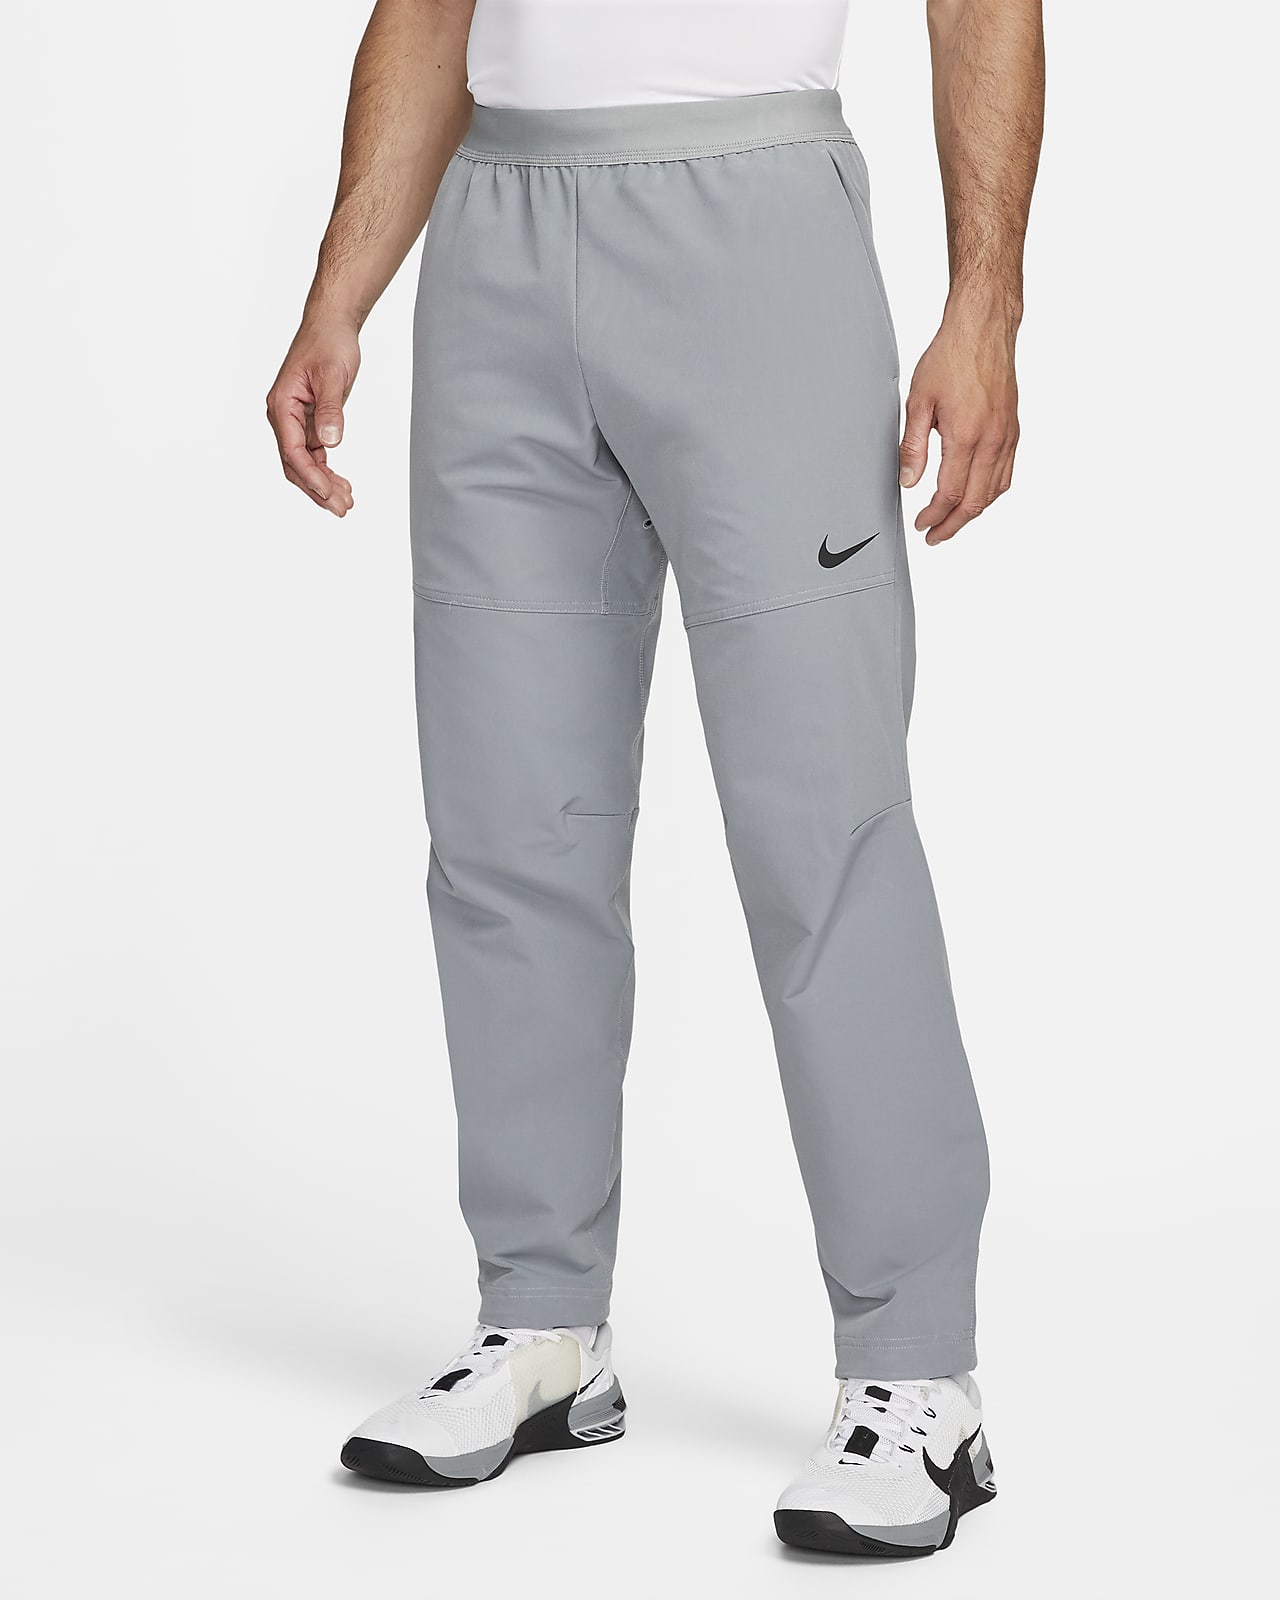 Pantalones acondicionados para el invierno hombre Nike Flex Vent Max. Nike.com